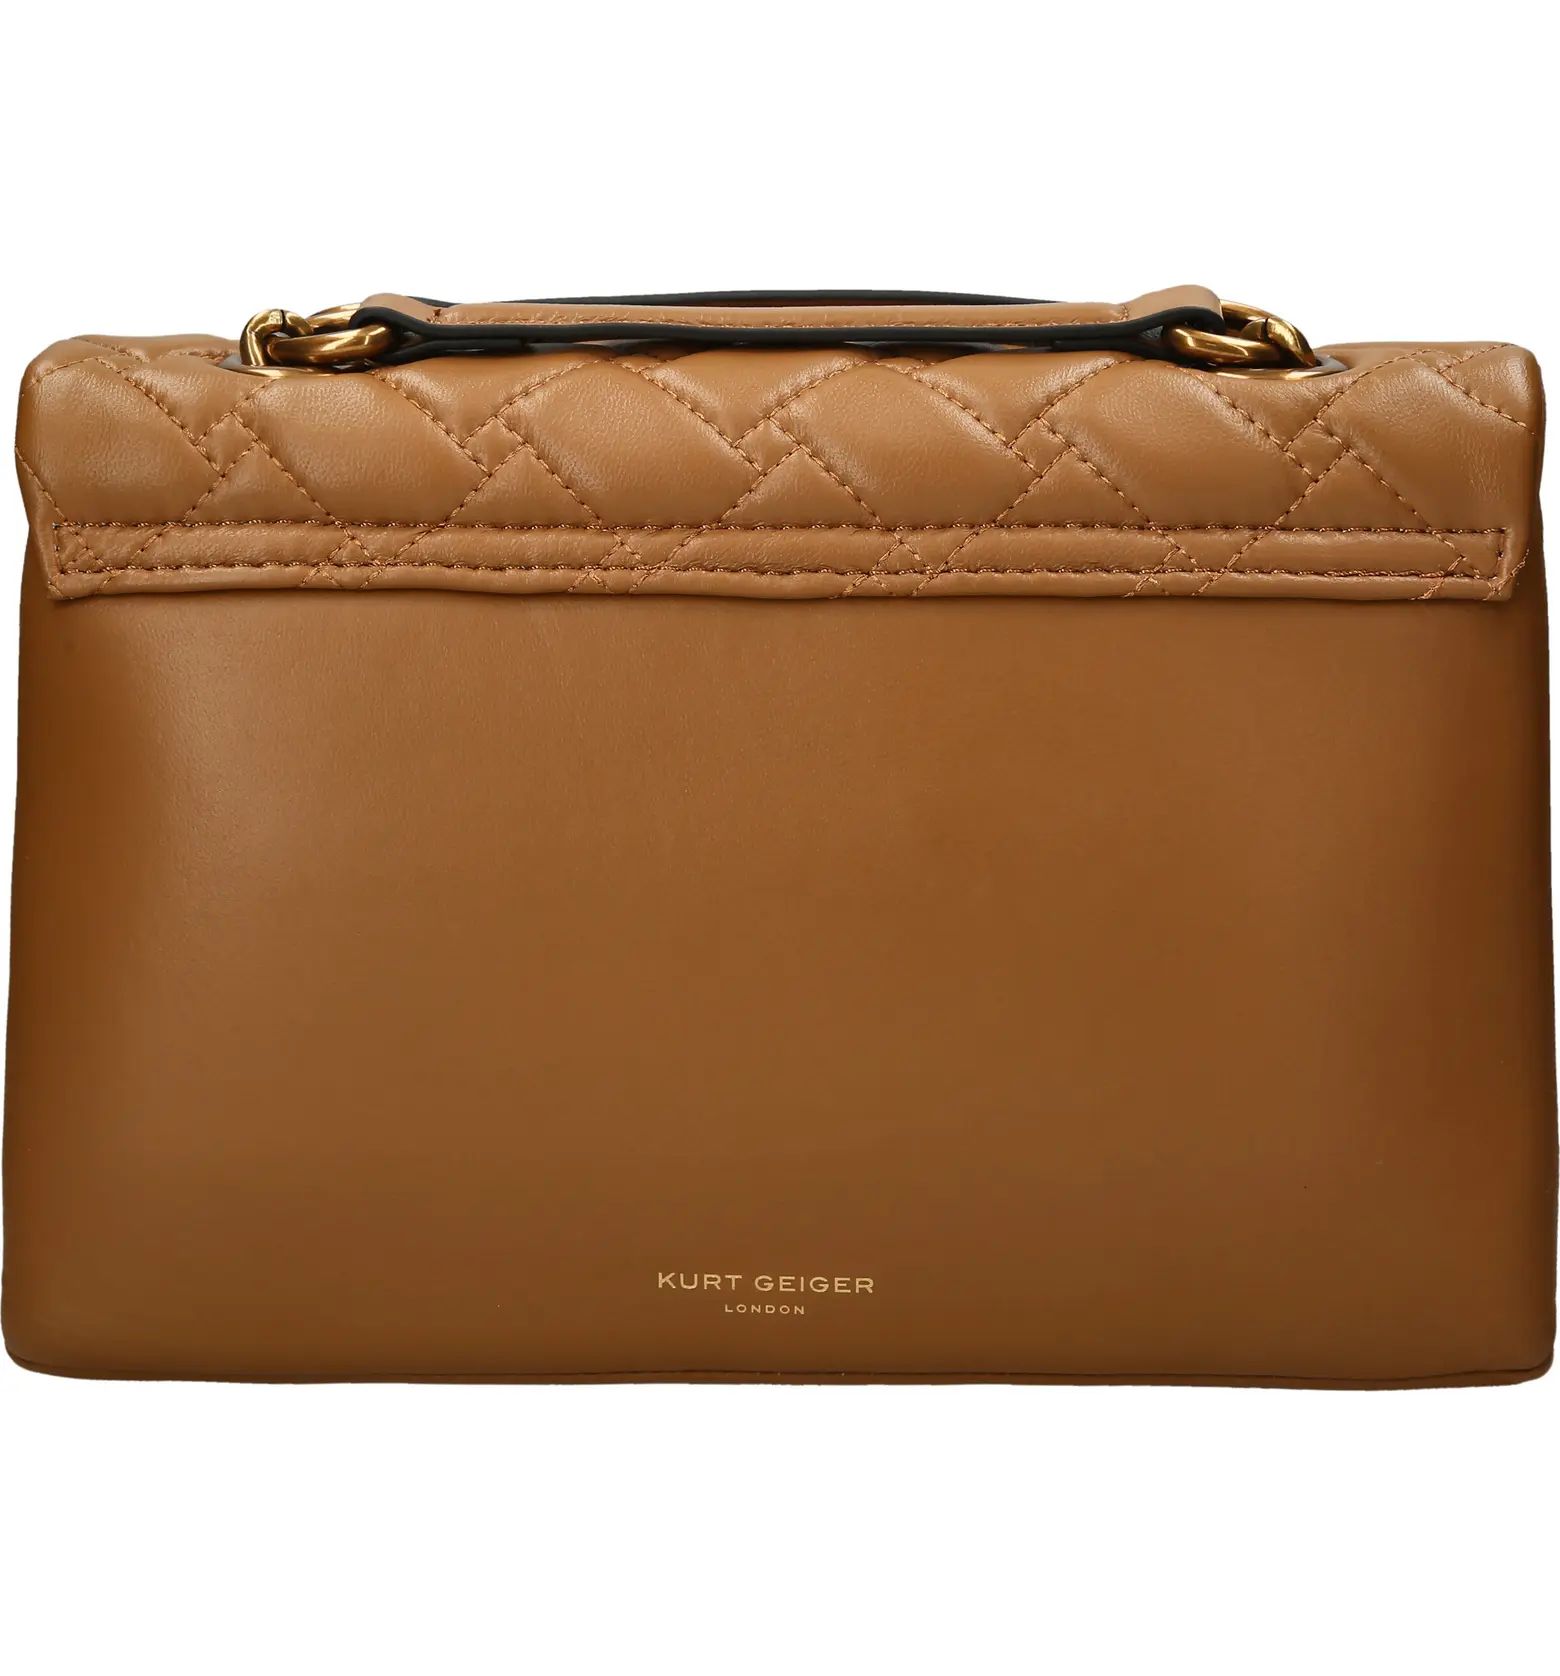 Kurt Geiger London Kensington Quilted Leather Convertible Shoulder Bag | Nordstrom | Nordstrom